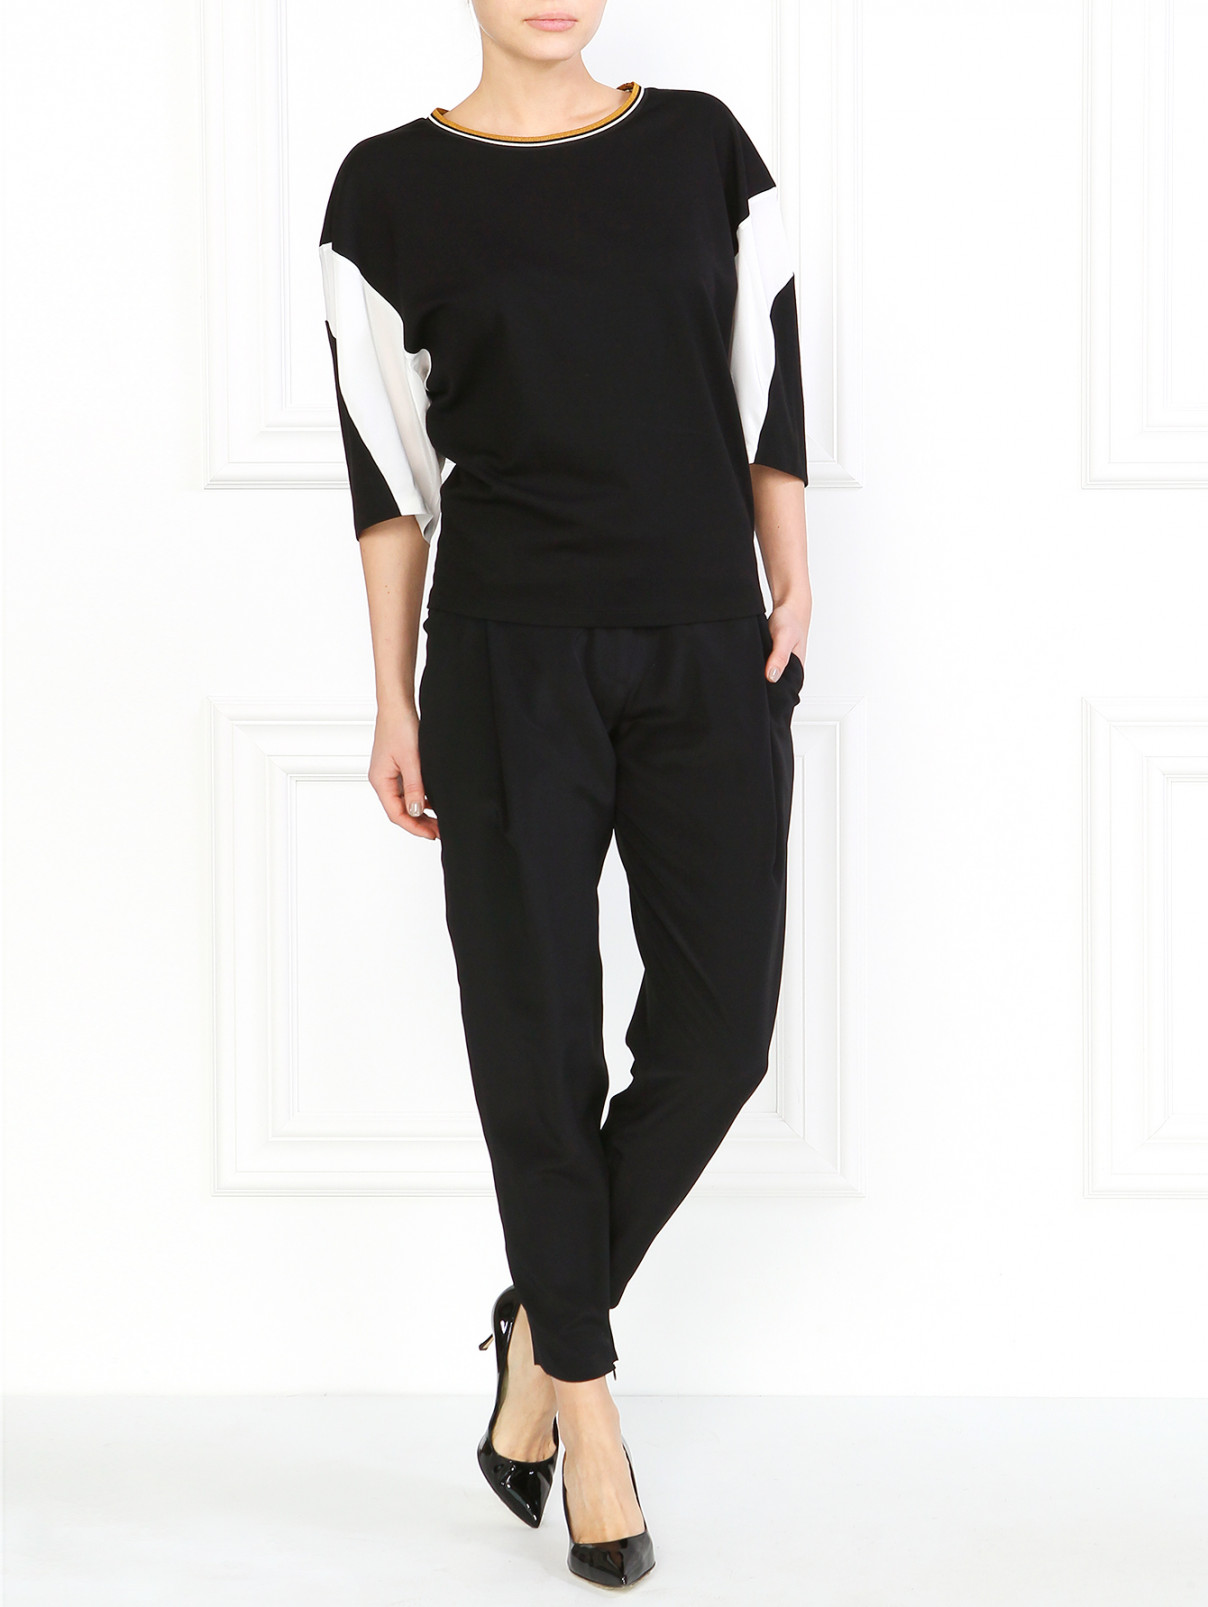 Шелковые брюки с боковыми карманами Barbara Bui  –  Модель Общий вид  – Цвет:  Черный